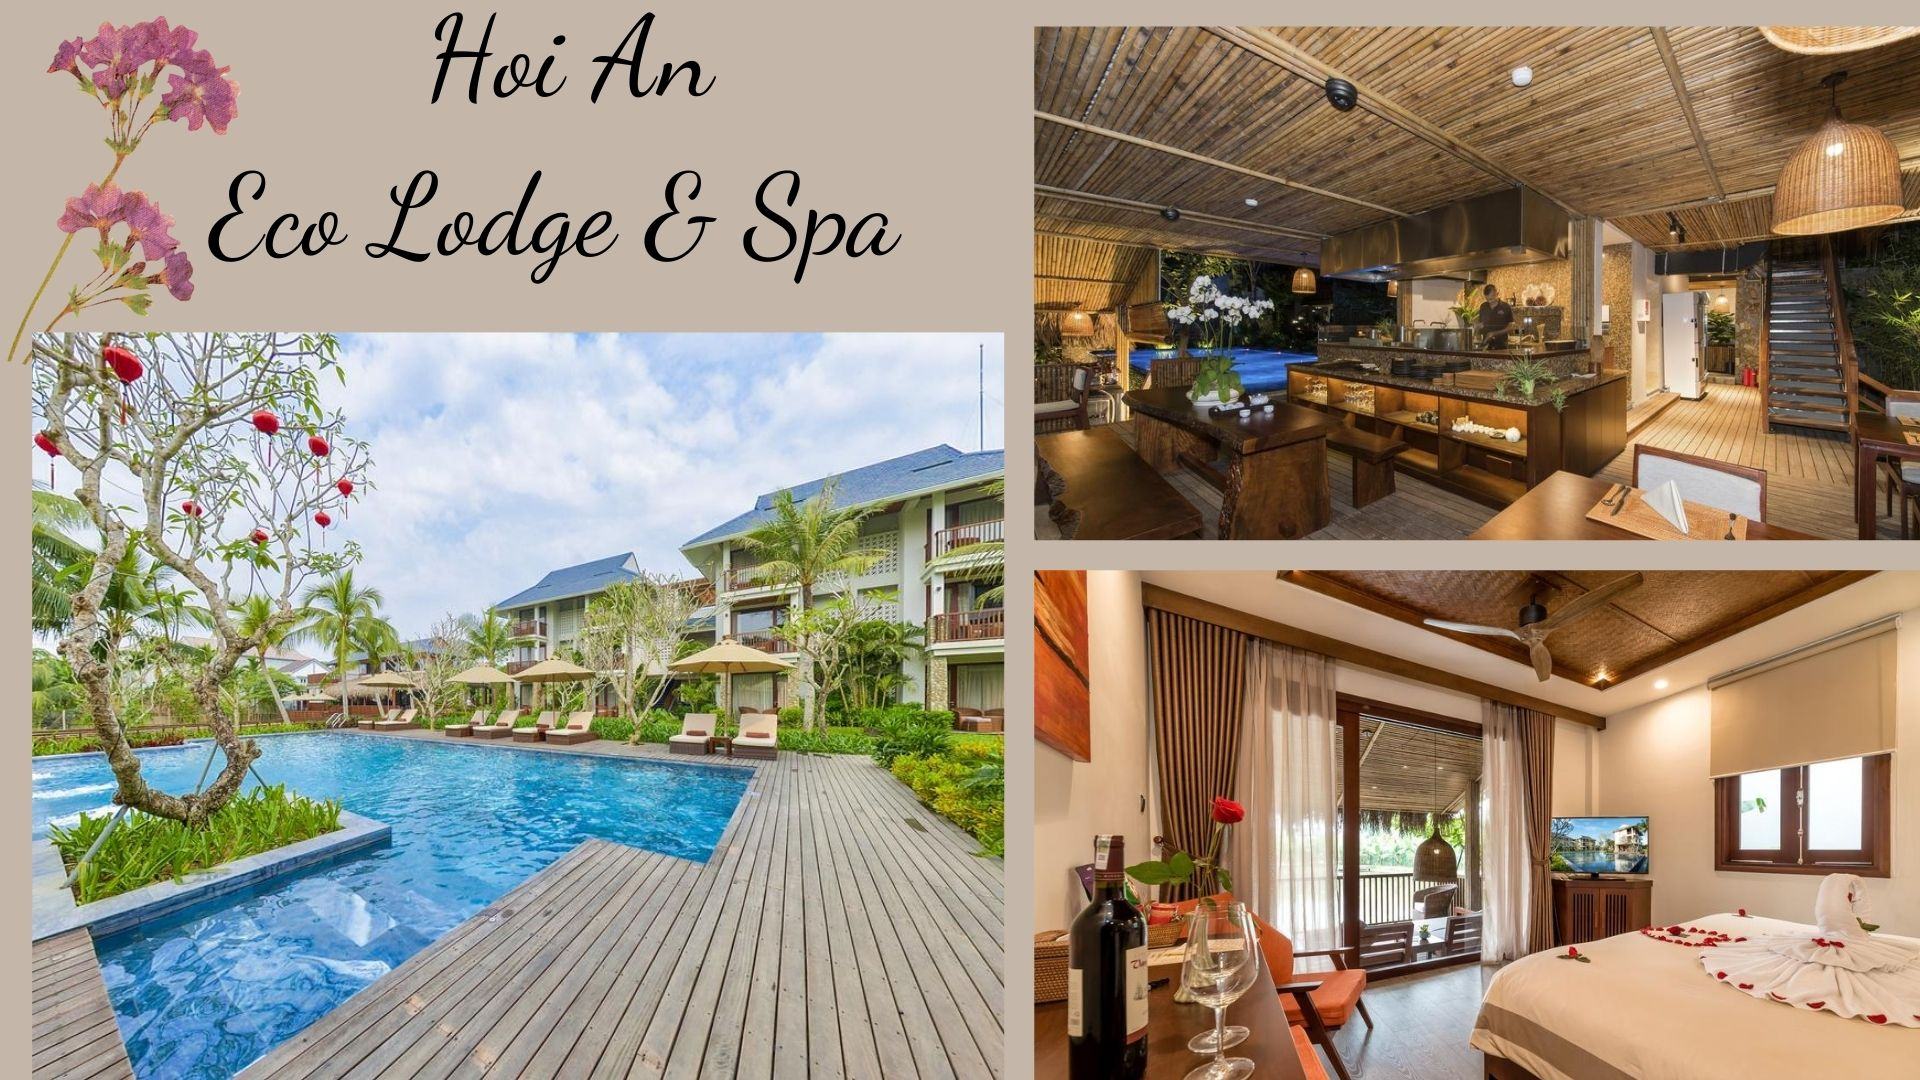 Hoi An Eco Lodge & Spa